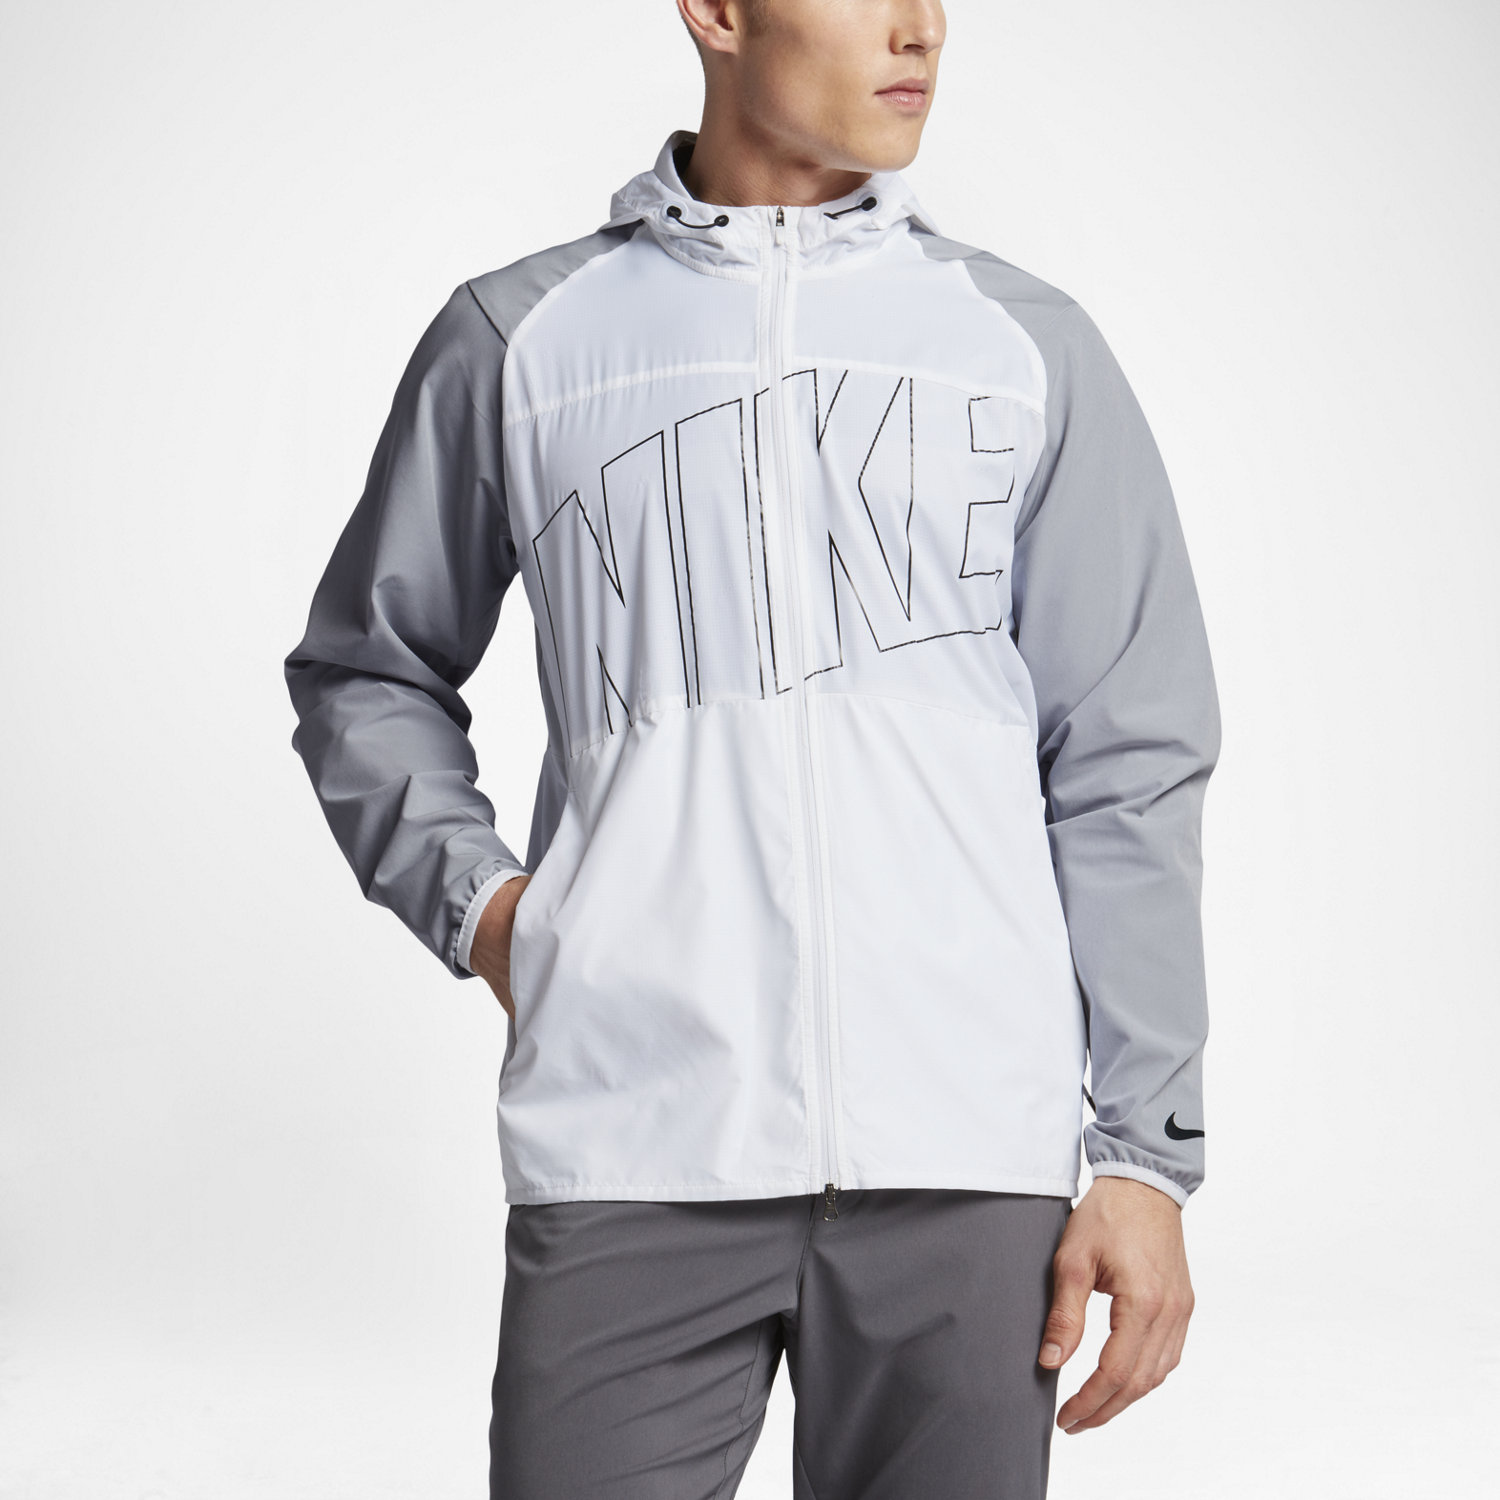 Men's Jackets, Windbreakers & Vests. Nike.com